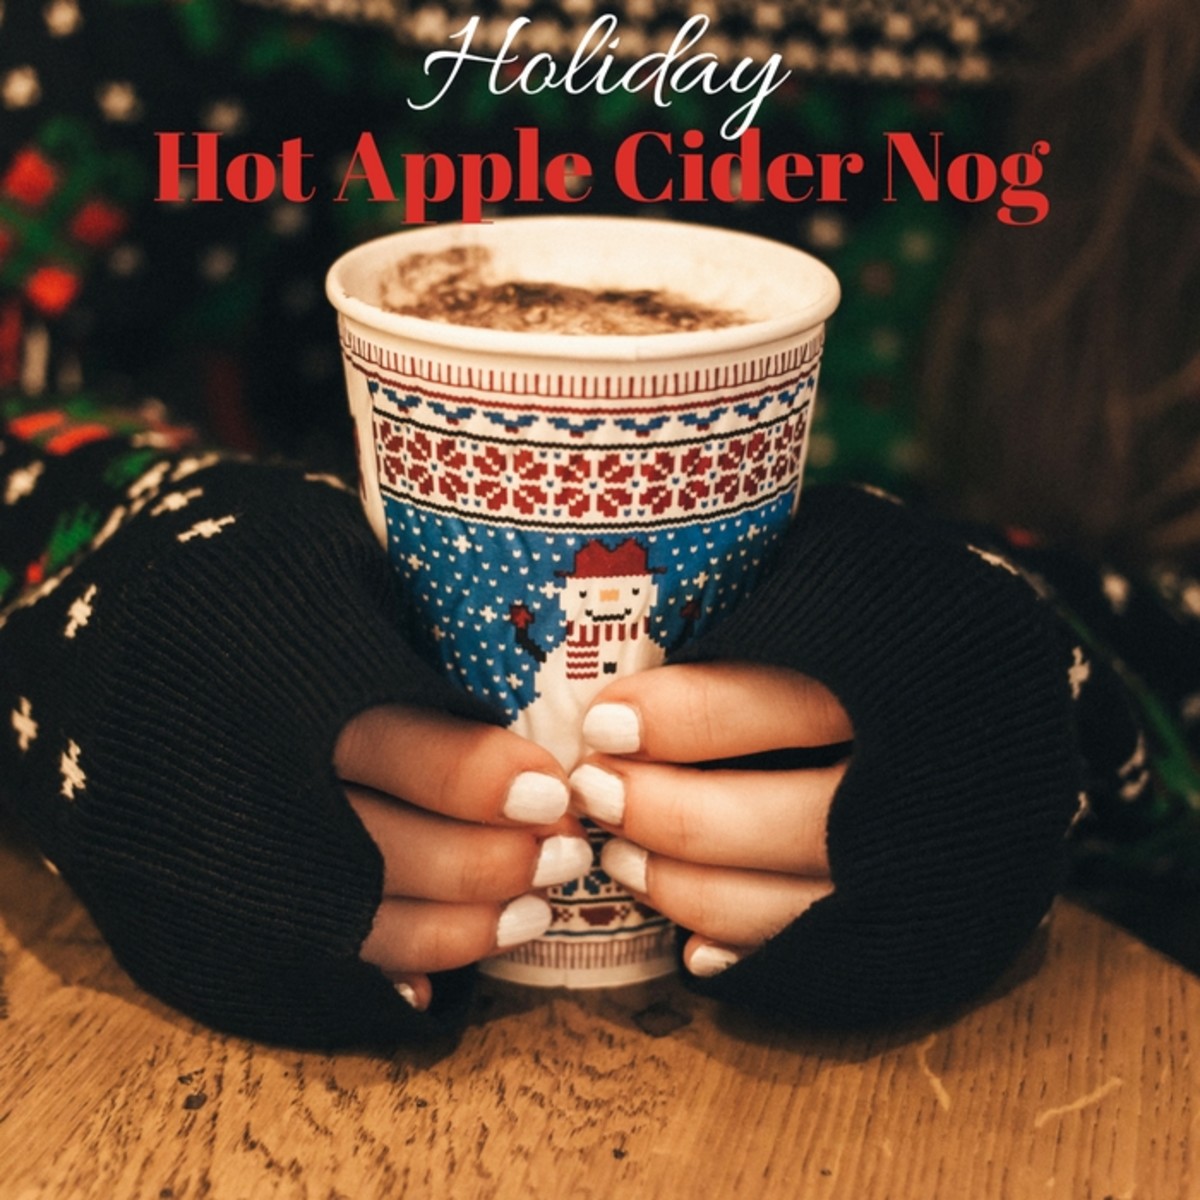 Holiday Hot Apple Cider Nog